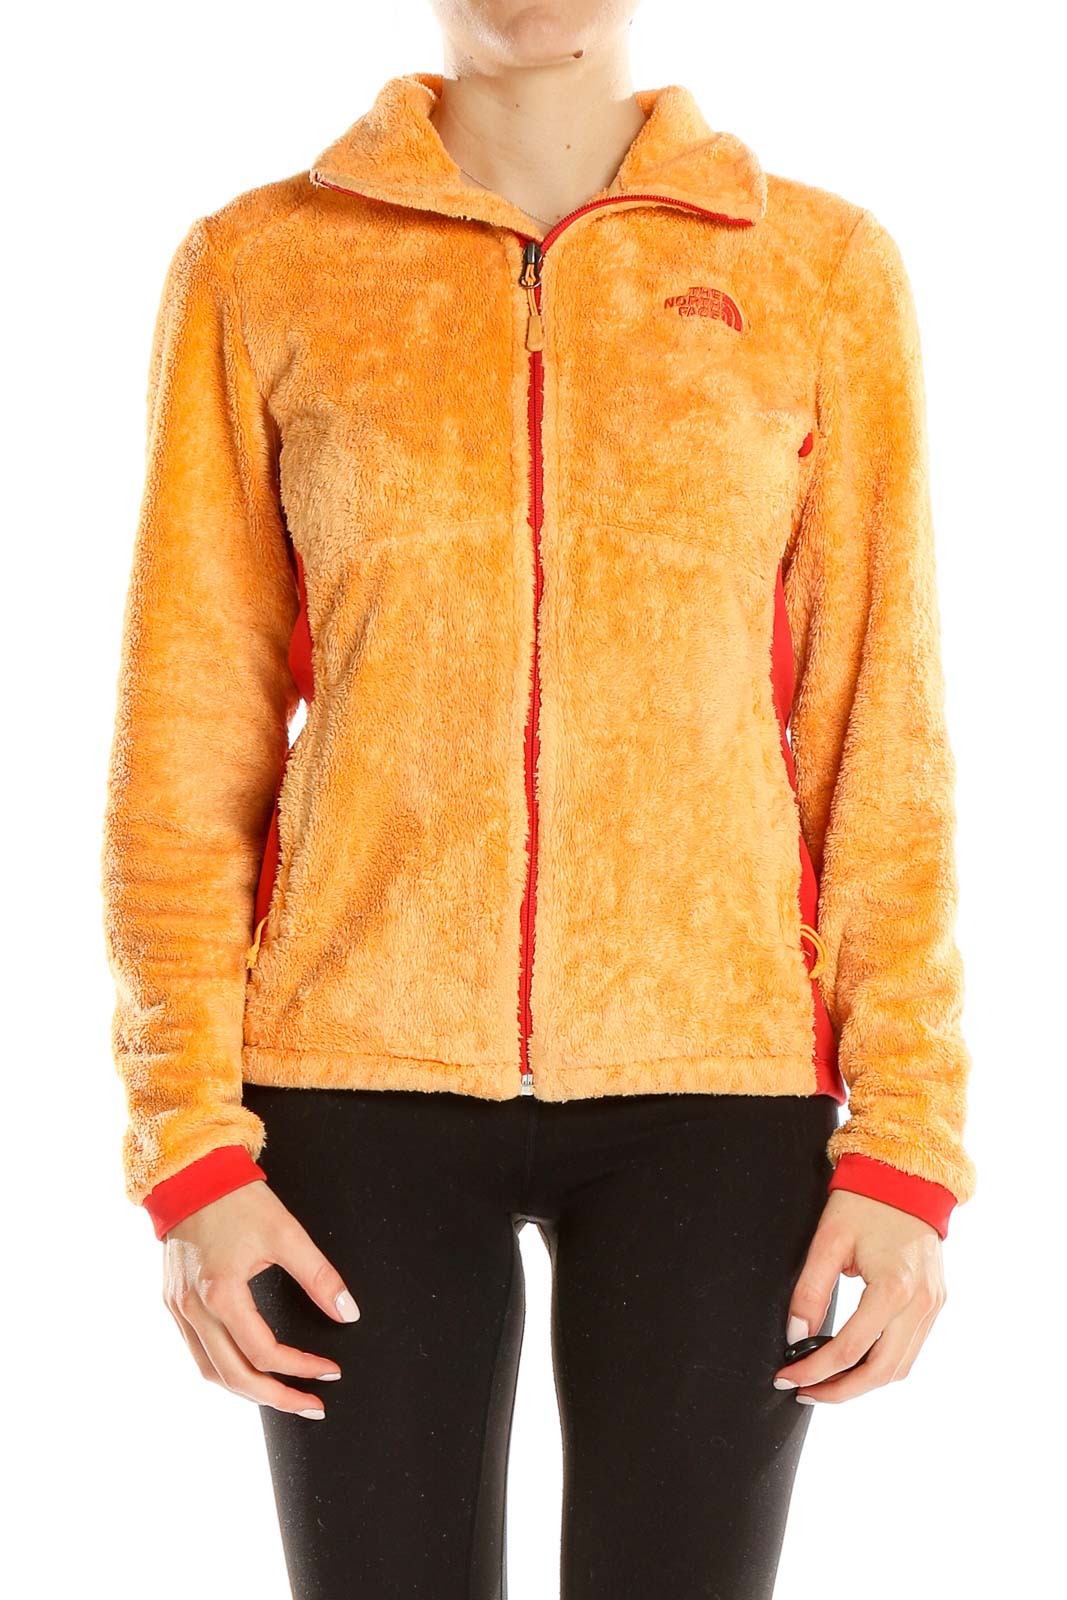 Orange Textured Jacket Front